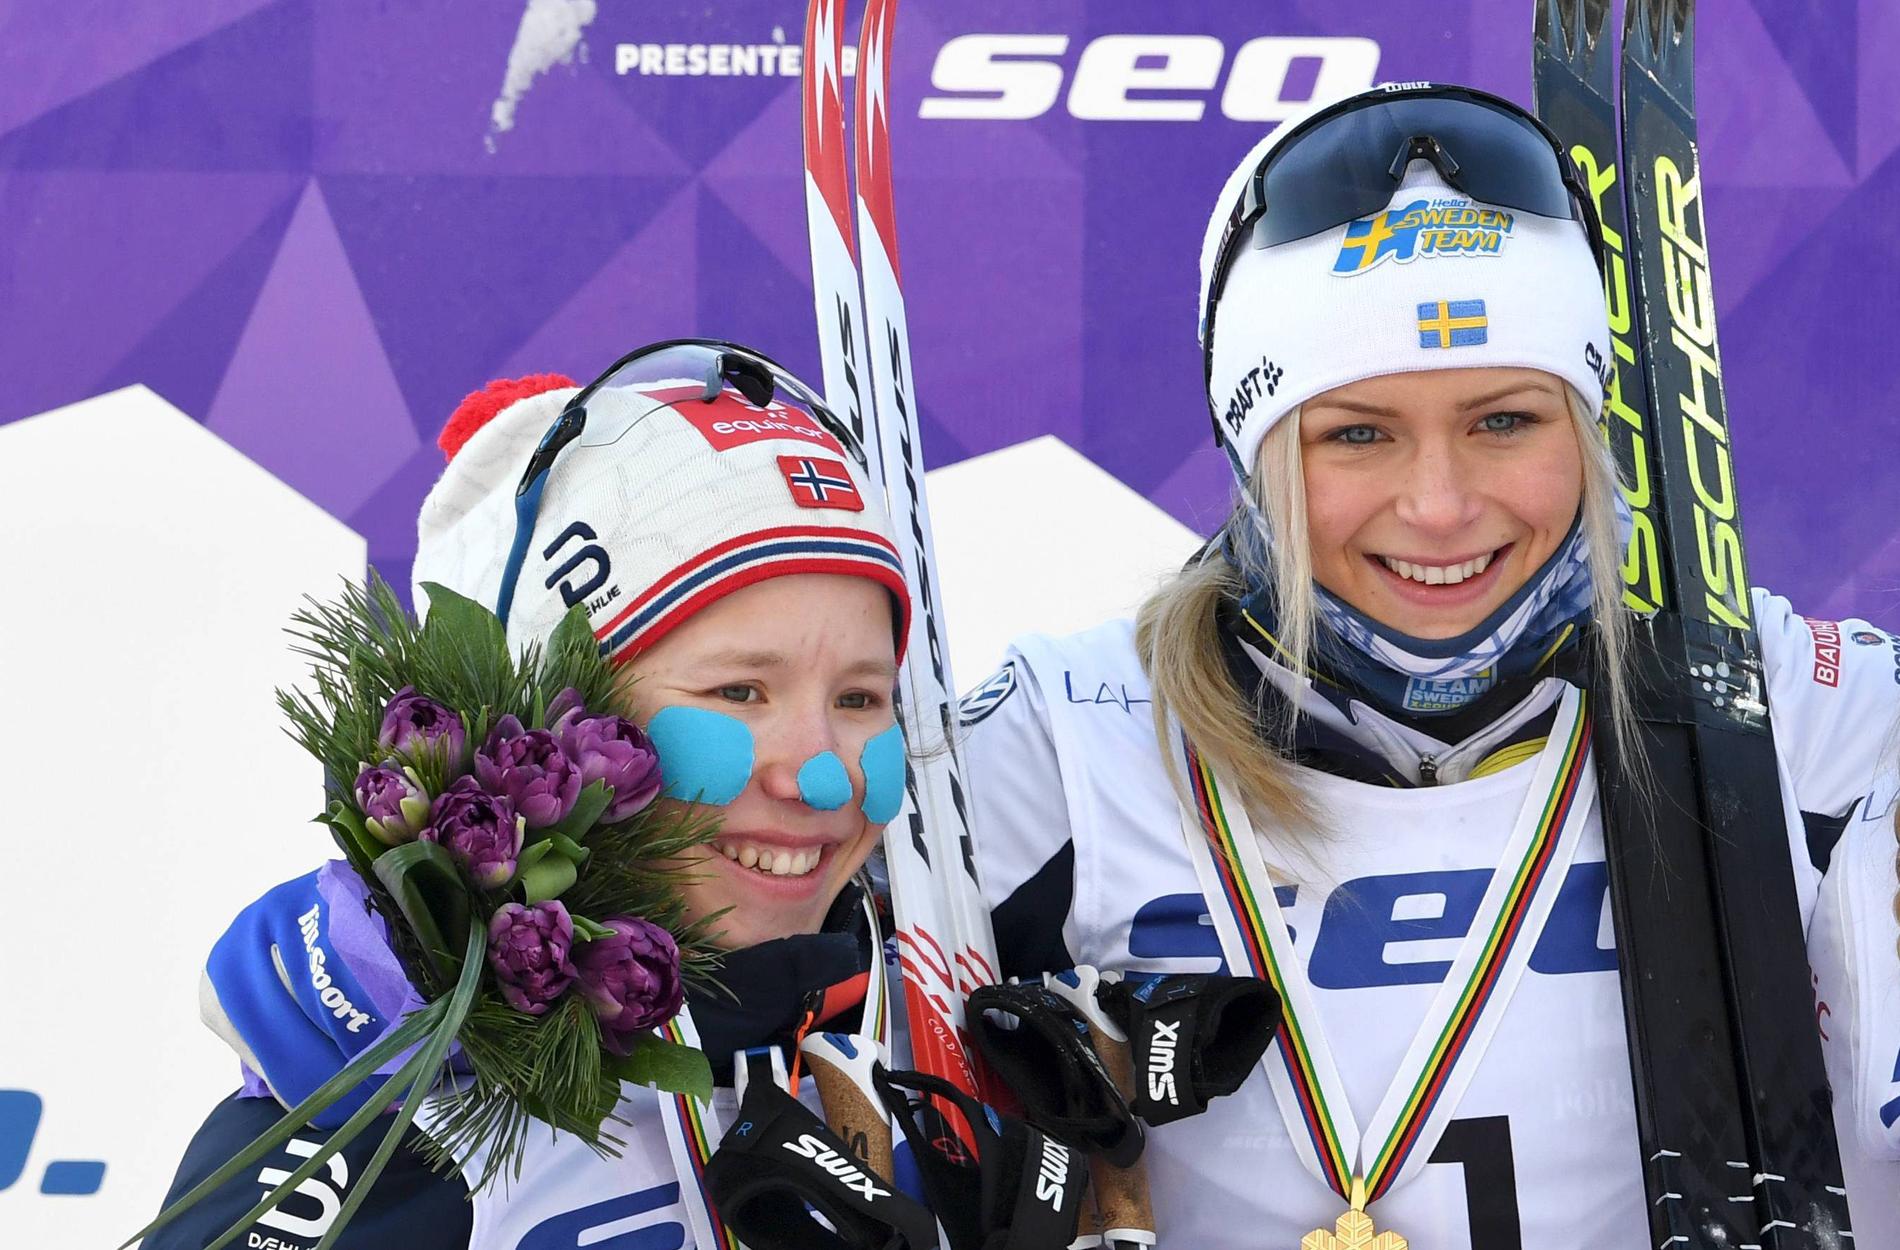 Helene Marie Fossesholm (t.v.) och Frida Karlsson (mitten) på pallen i junior-VM i Lahtis 2019. Nu möts de på sistasträckan i VM-stafetten.